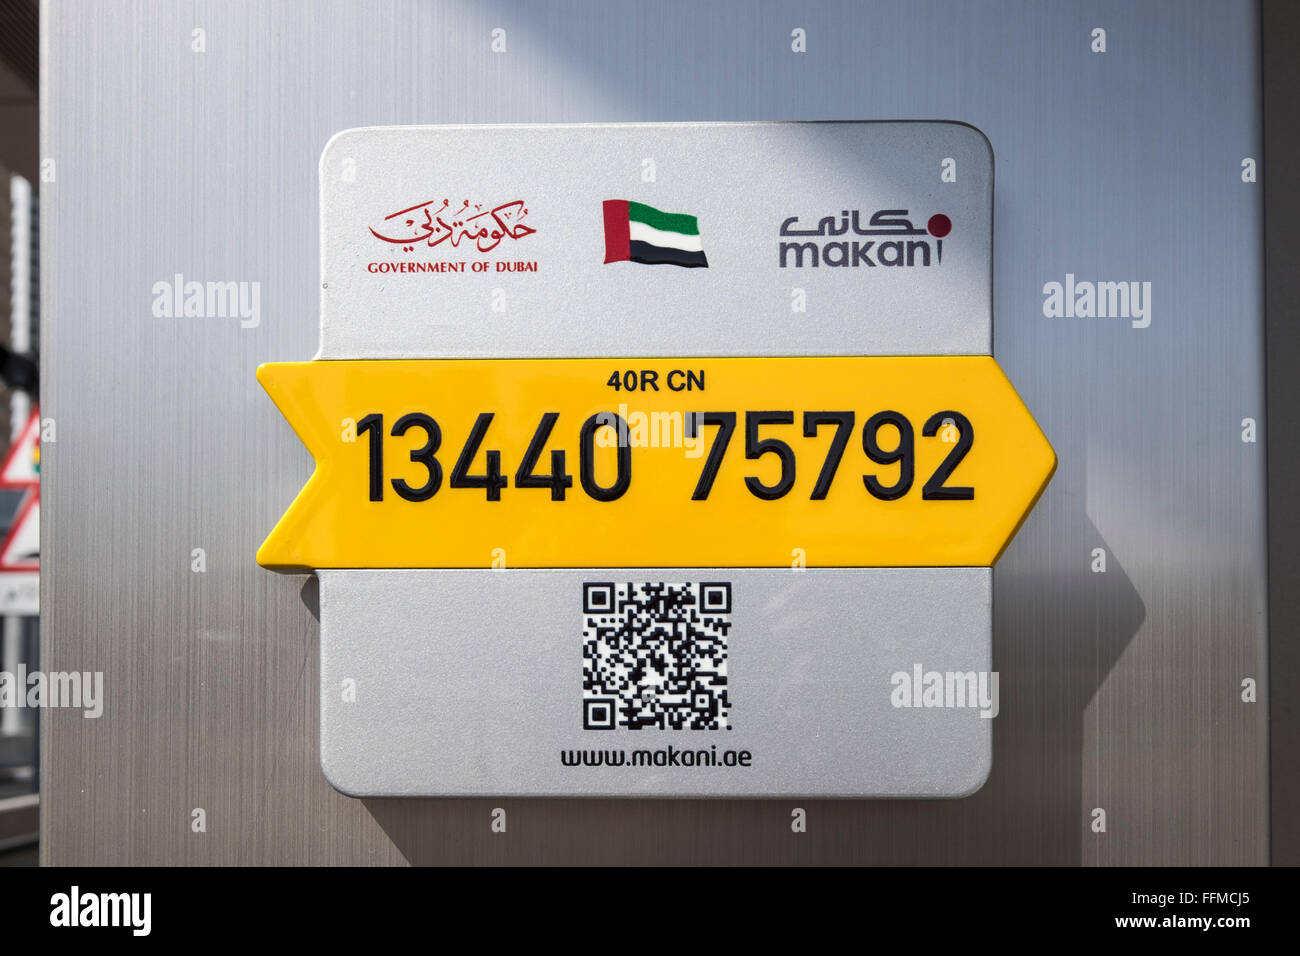 Makani geographic Information System (GIS) Adresse Standort melden Sie mit einzigartigen 10-stellige Code angefügt Gebäude in Dubai UAE Stockfoto